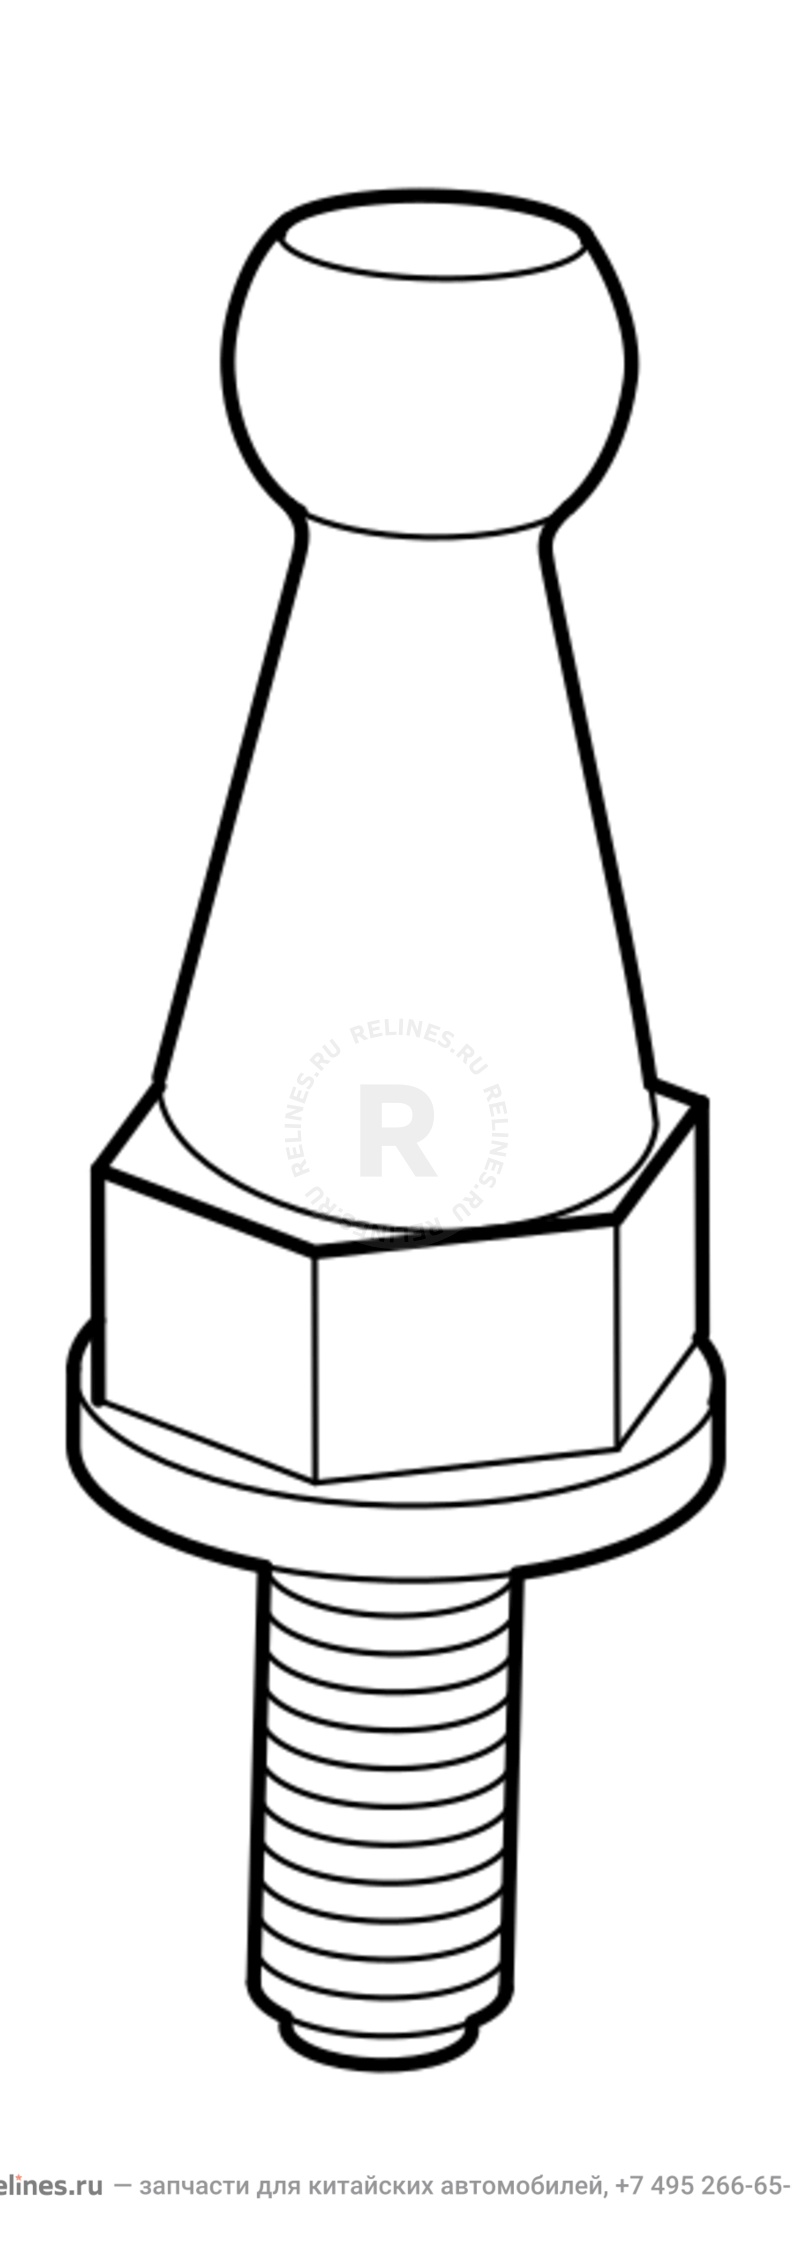 Запчасти Chery Tiggo 3 Поколение I (2014)  — Плита верхняя (декоративная крышка) двигателя (2) — схема